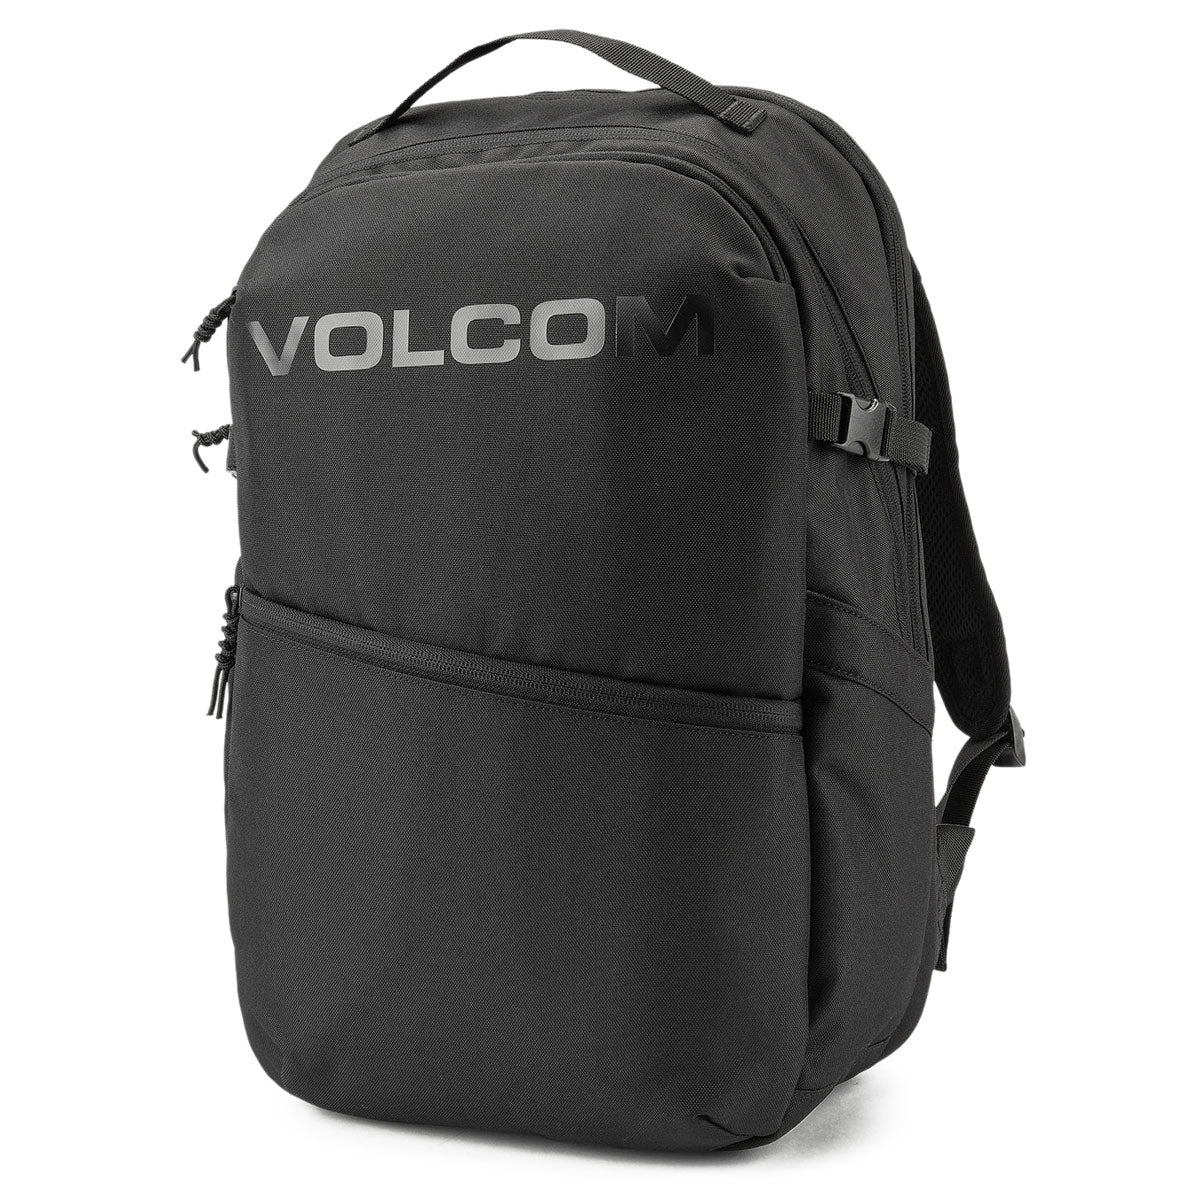 Volcom Roamer Backpack - Rinsed Black image 1